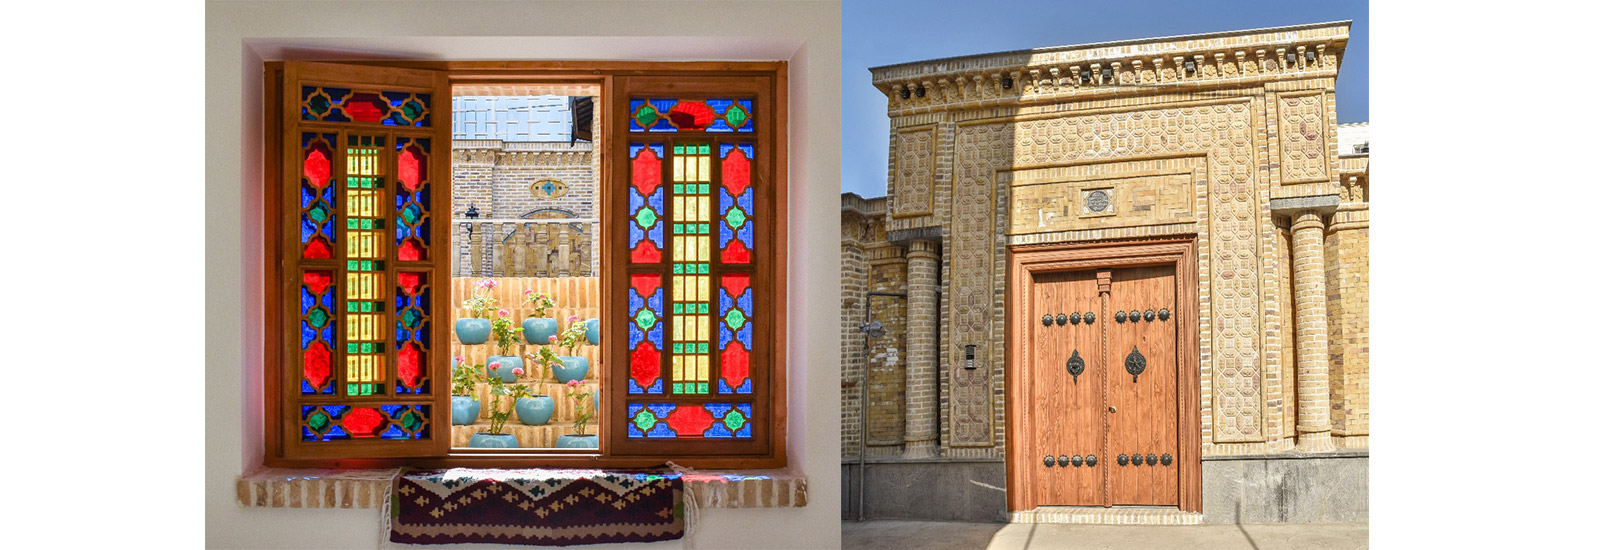 پروژه پنجره قواره بری با شیشه رنگی و چوبی ارسی و پروژه شخصی خیابان چمران مشهد- ایران